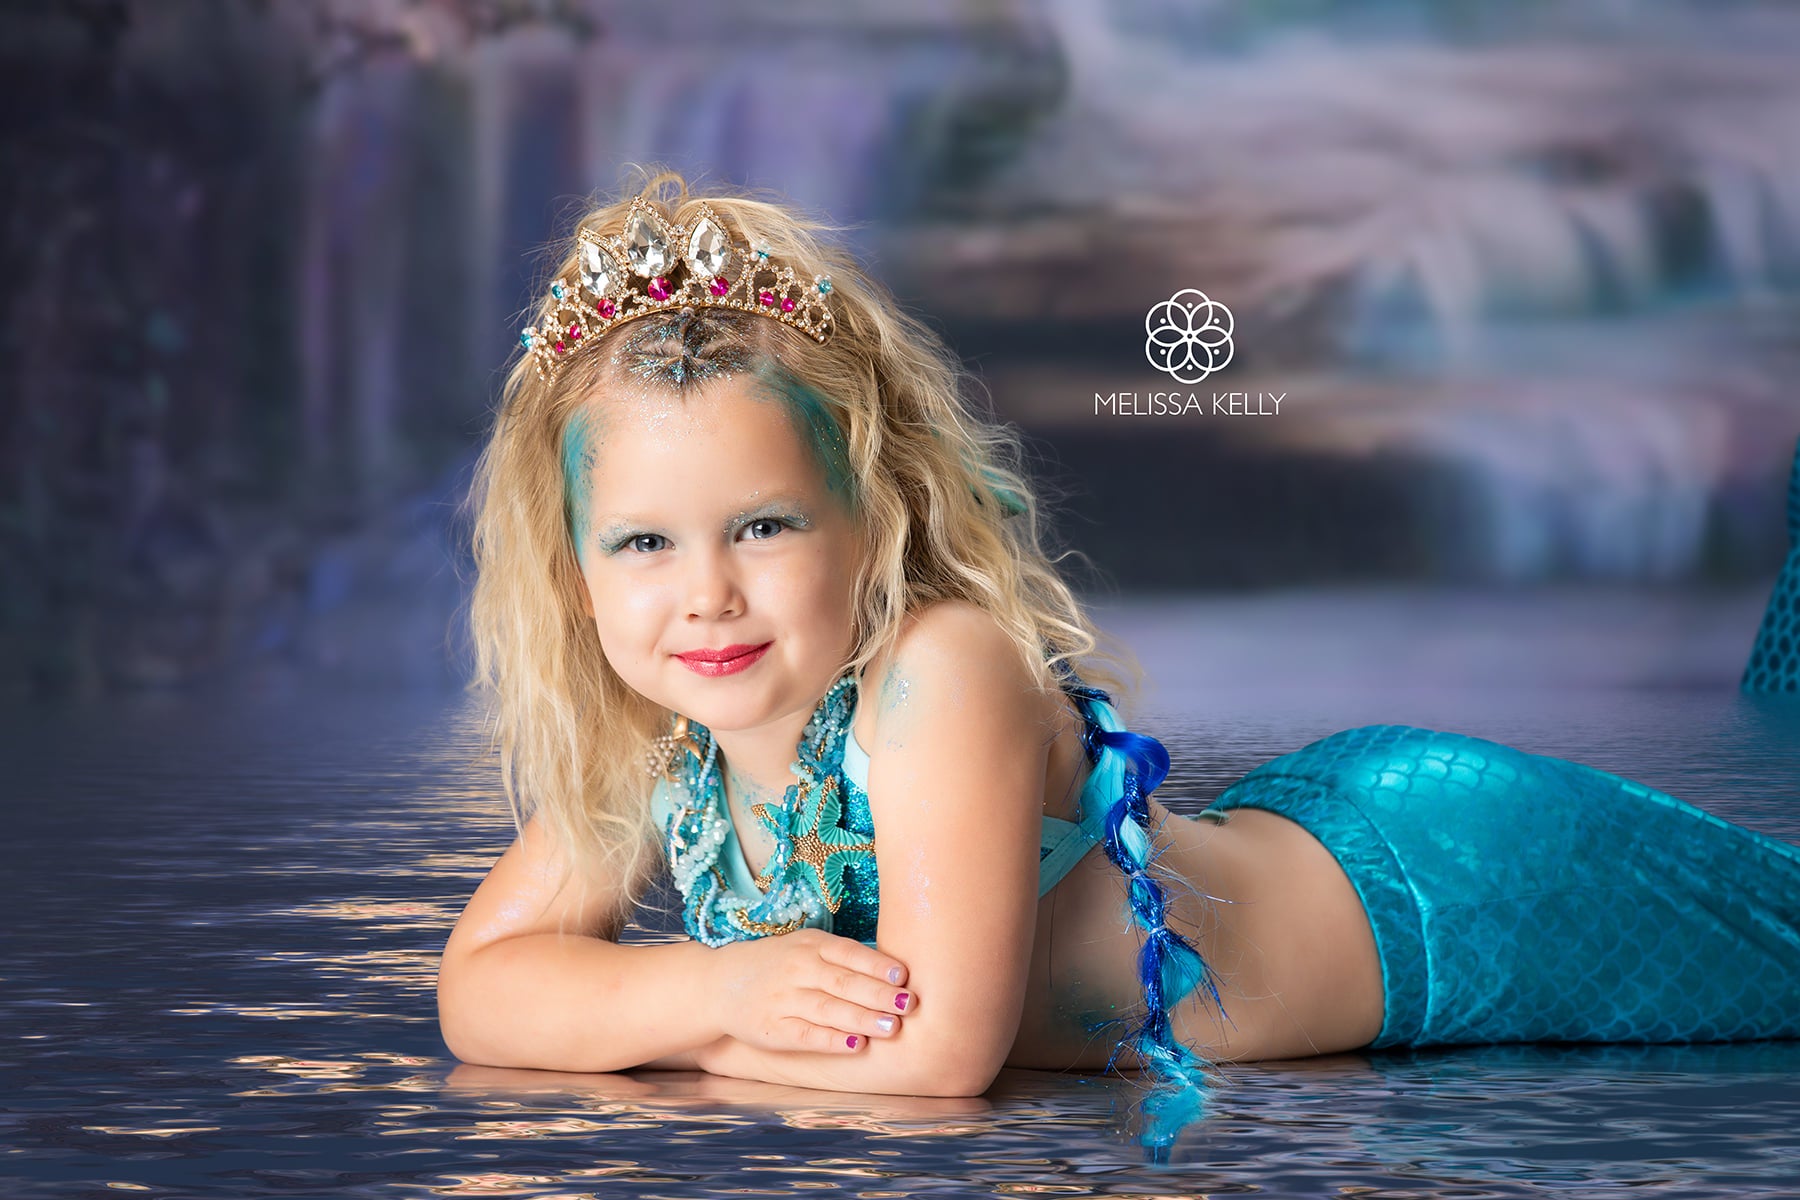 Kate Mermaid Water Summer Backdrop